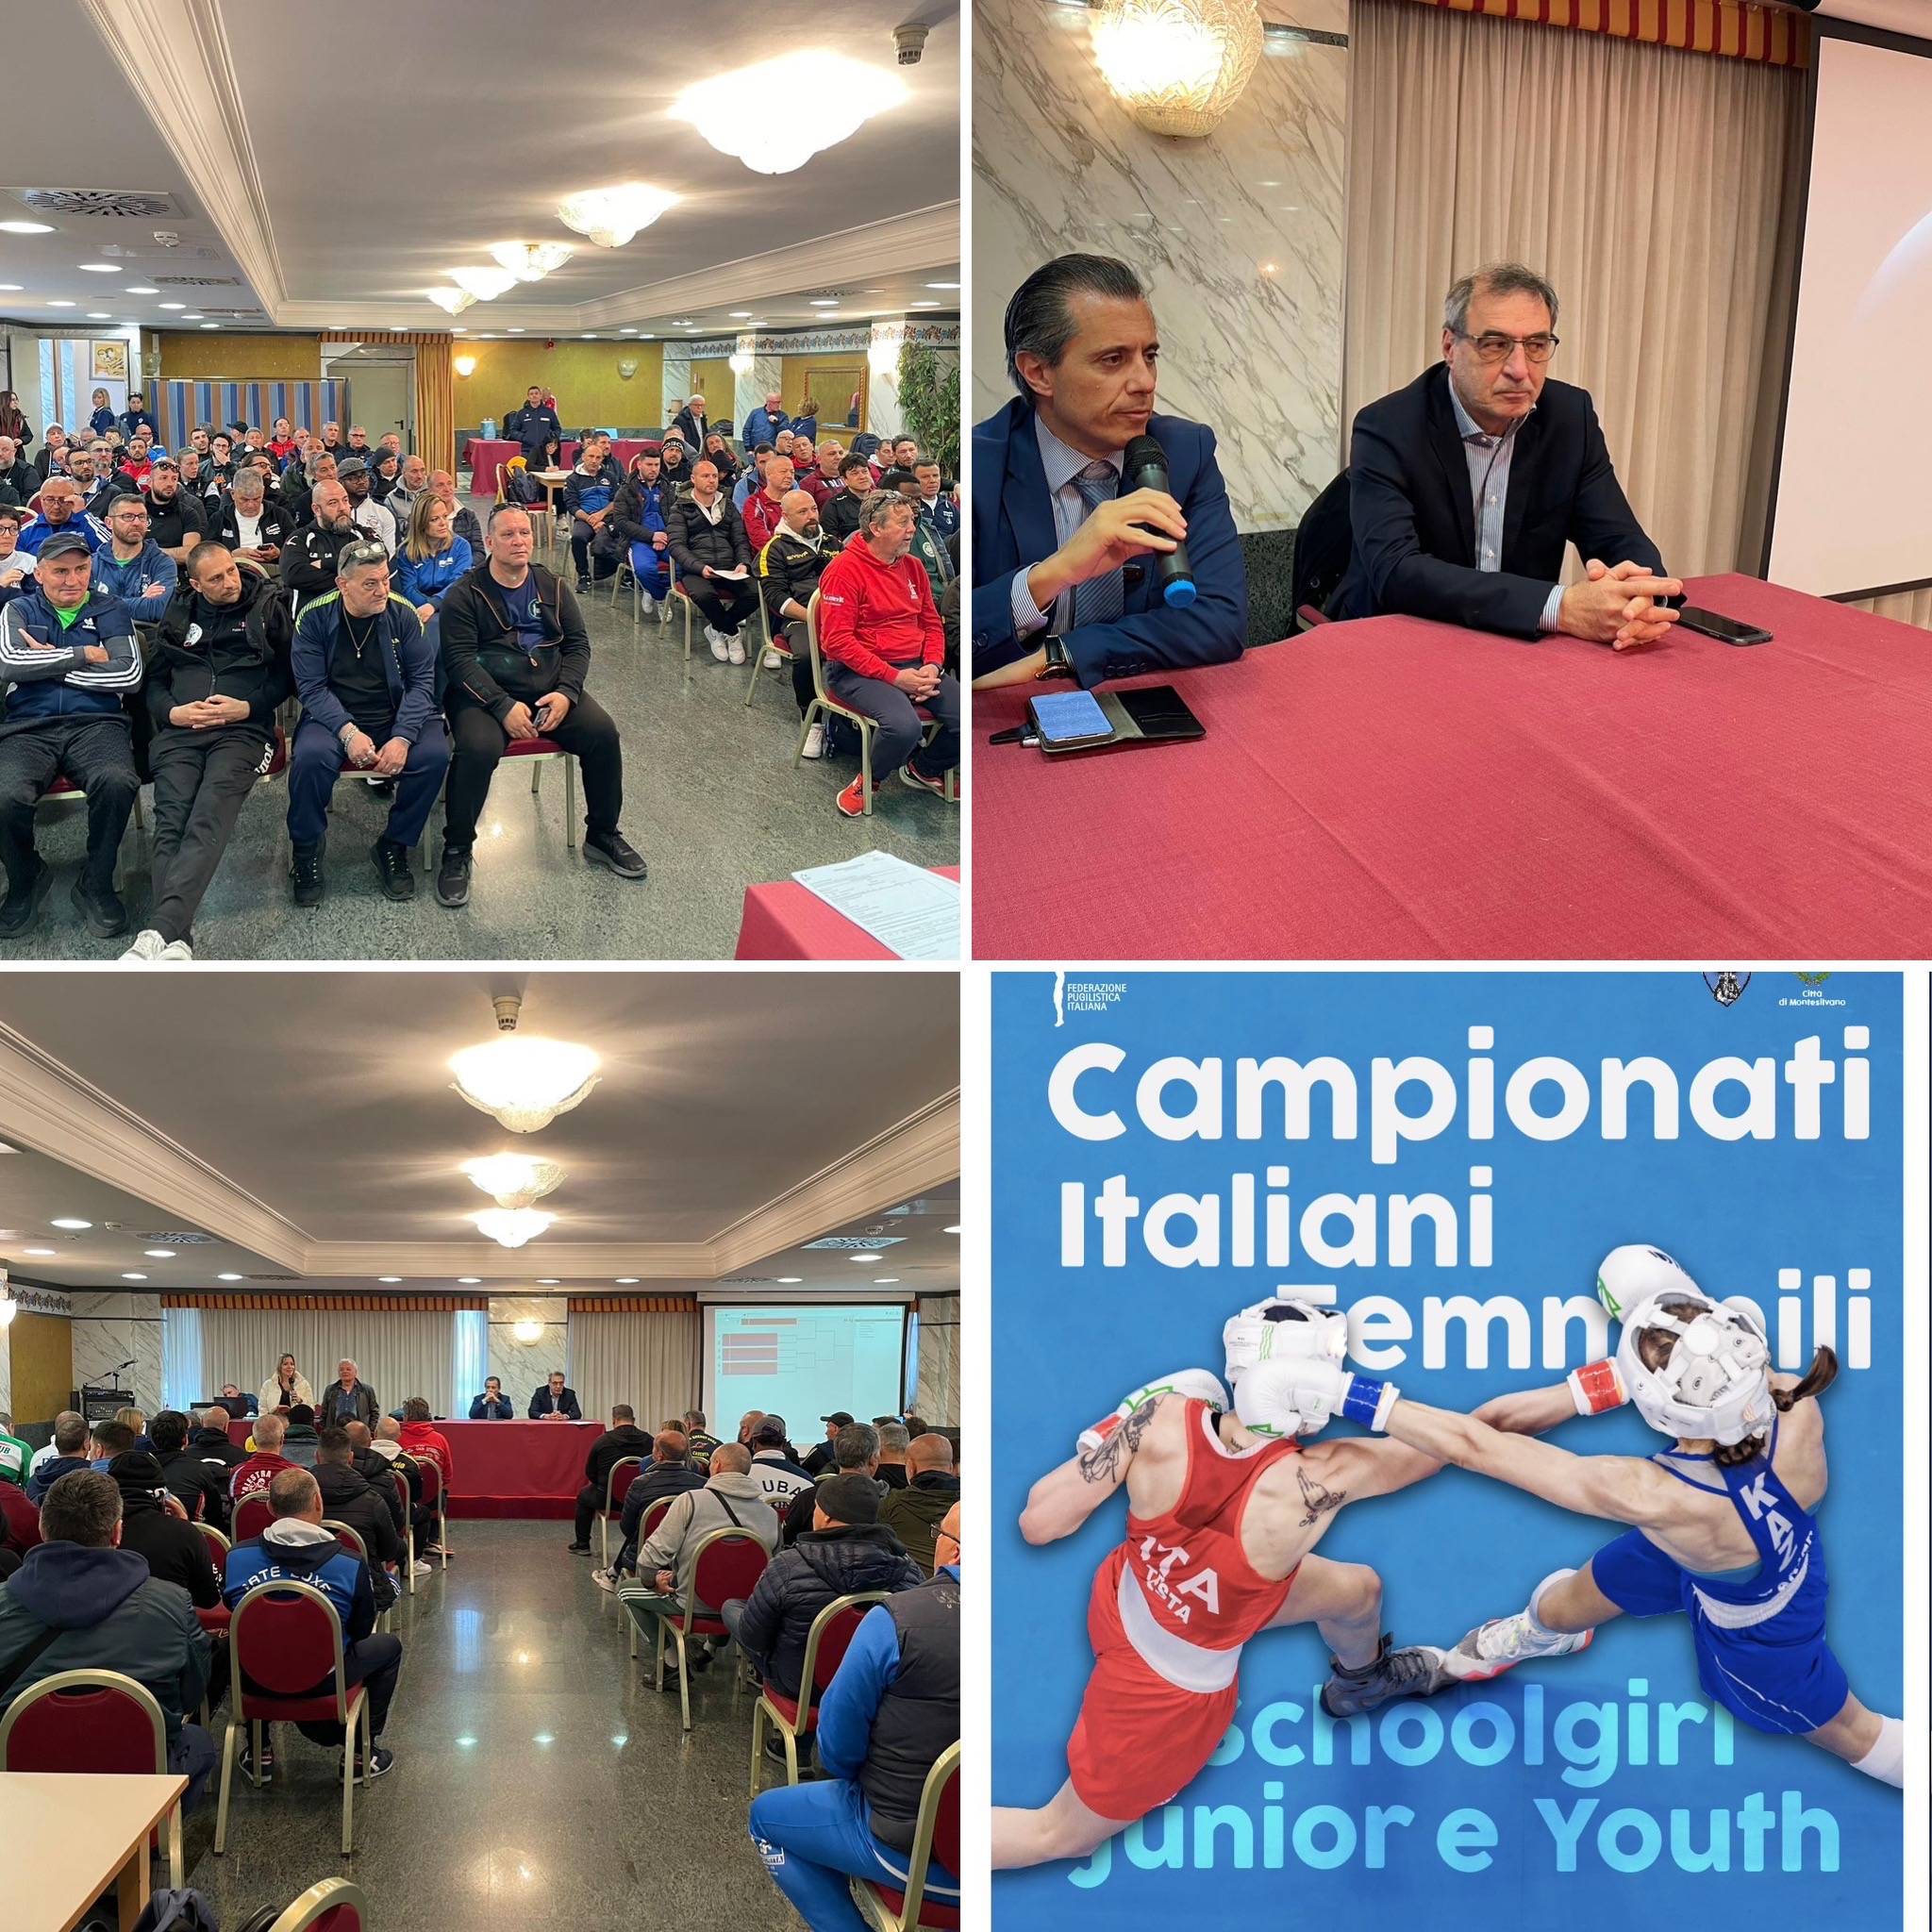 Campionati Italiani Schoolgirl, Junior e Youth F 2023 - Montesilvano 14-16 Aprile p.v. - RAGNI + PROGRAMMI DAY 1 - INIZIO MATCH H 14 INFO LIVESTREAMING